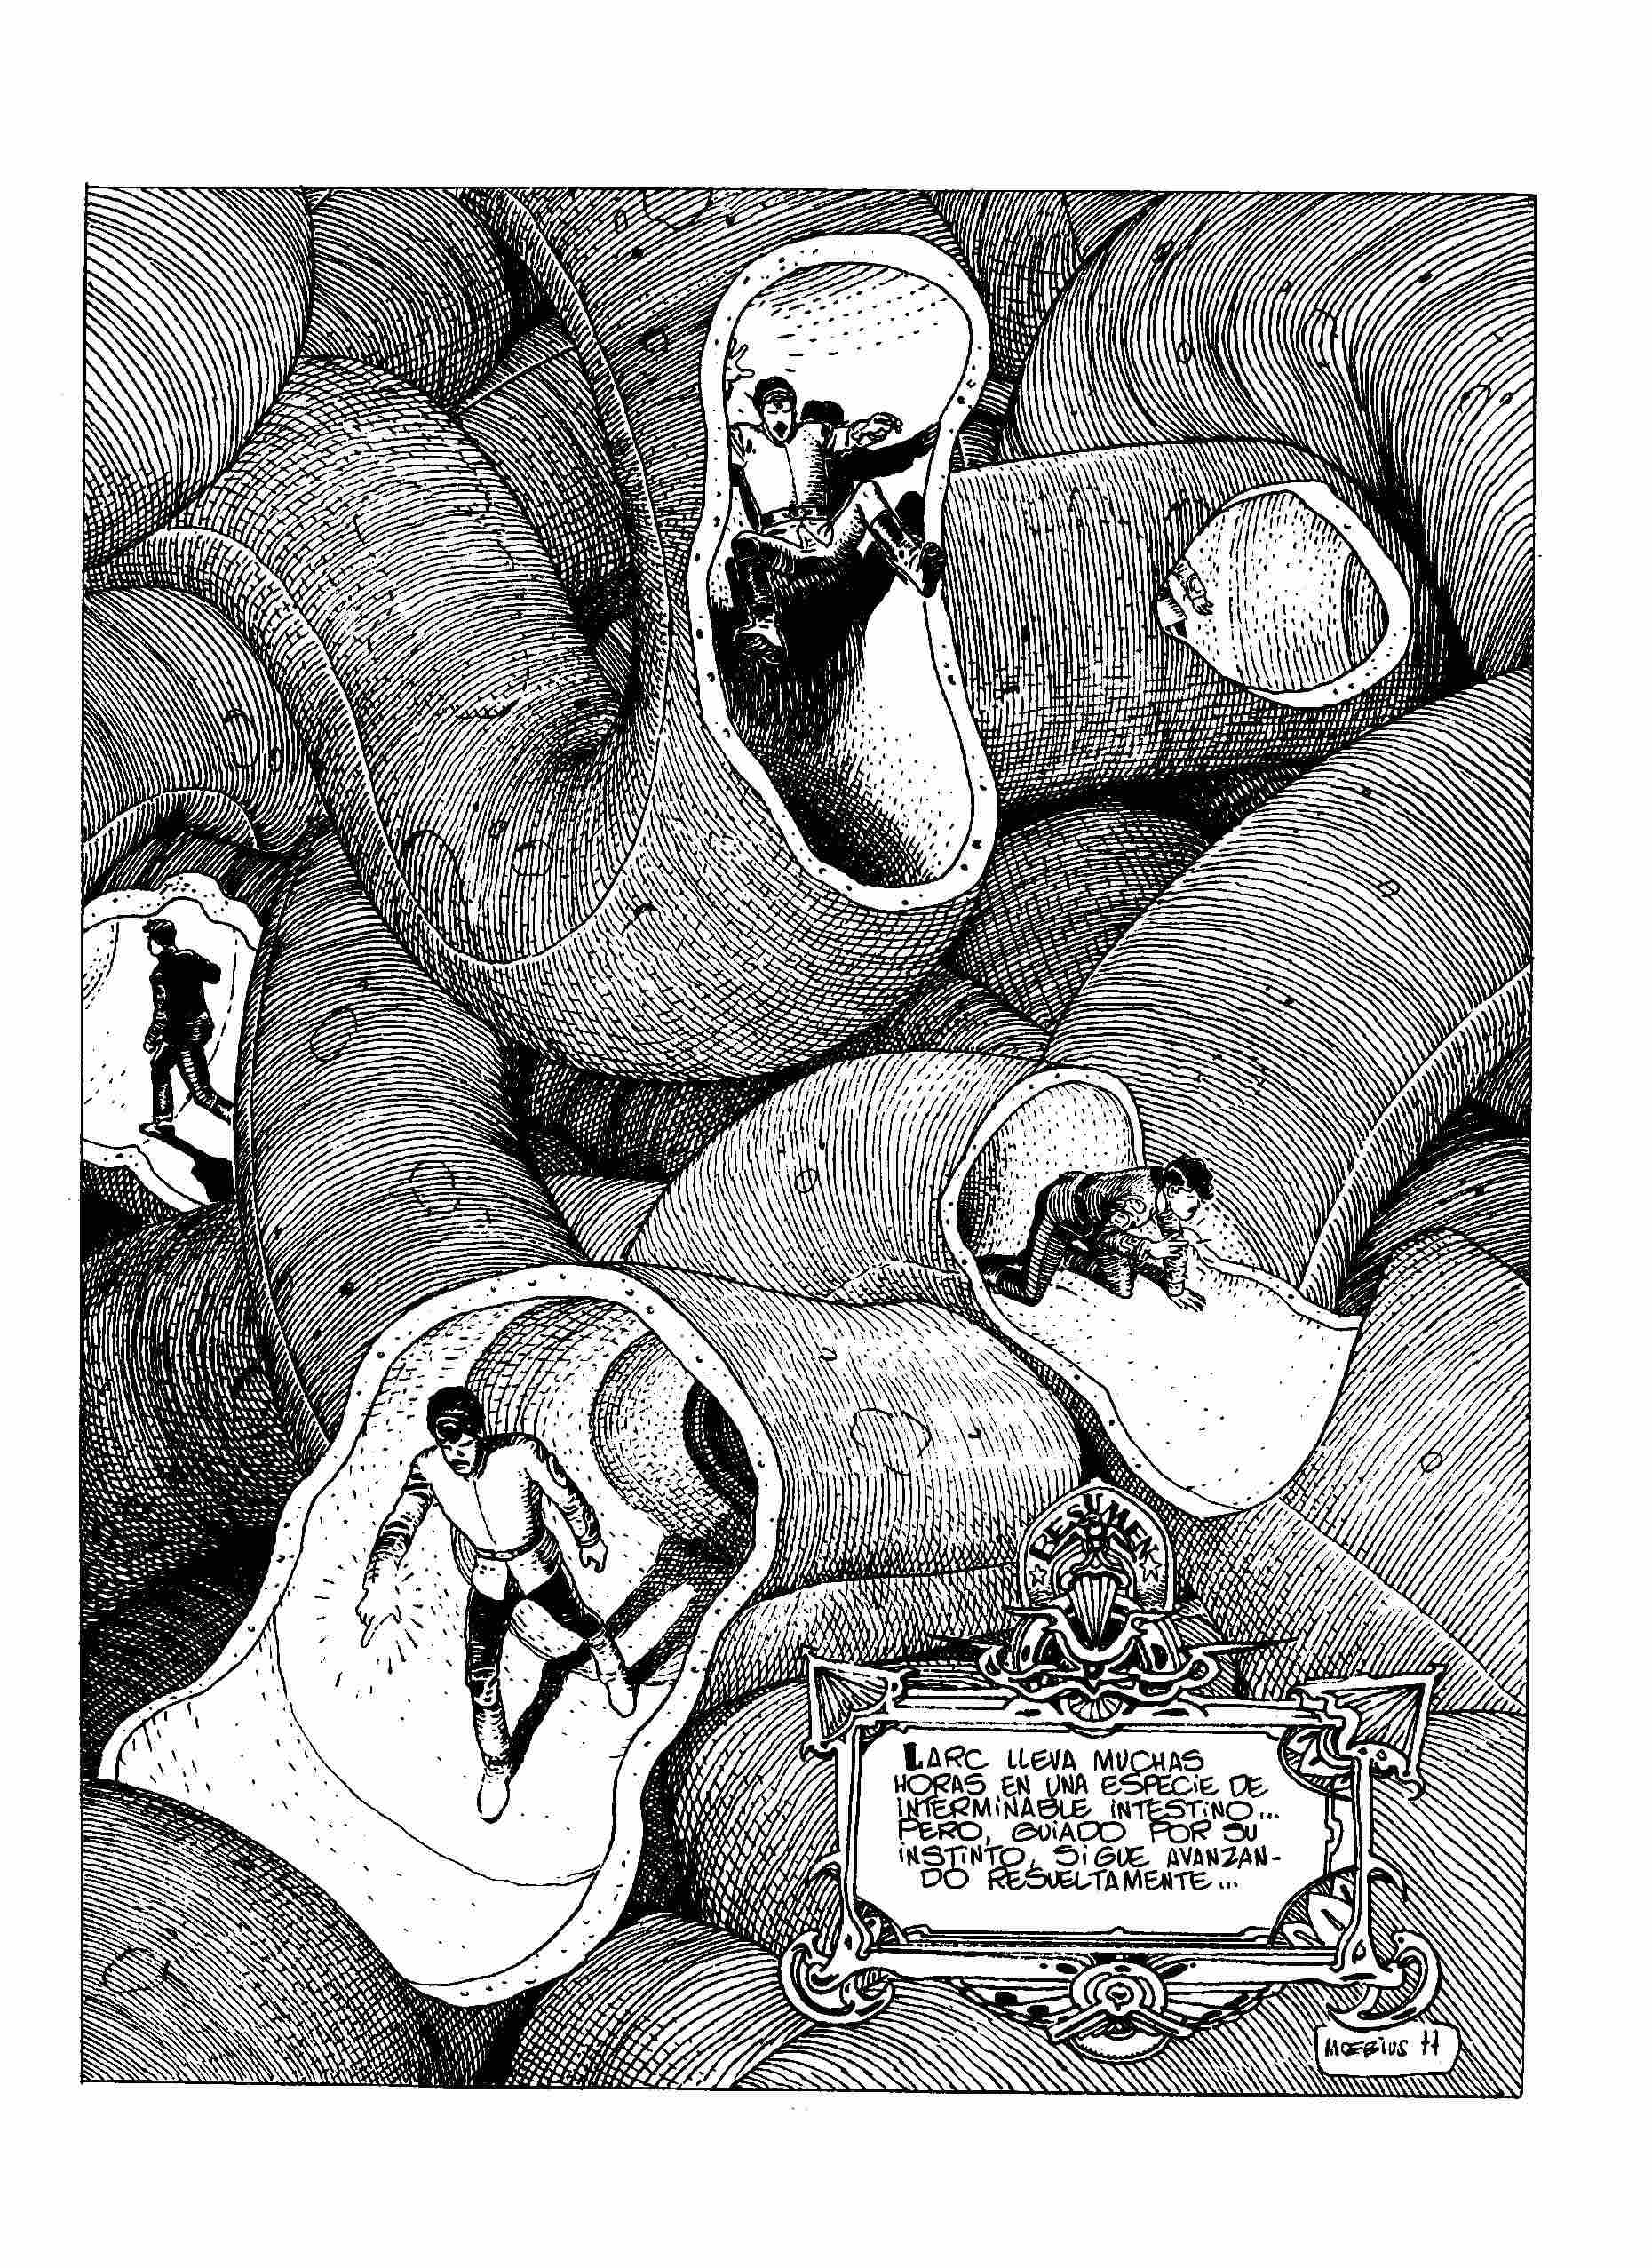 Dibujo en blanco y negro de un cómic de Moebius